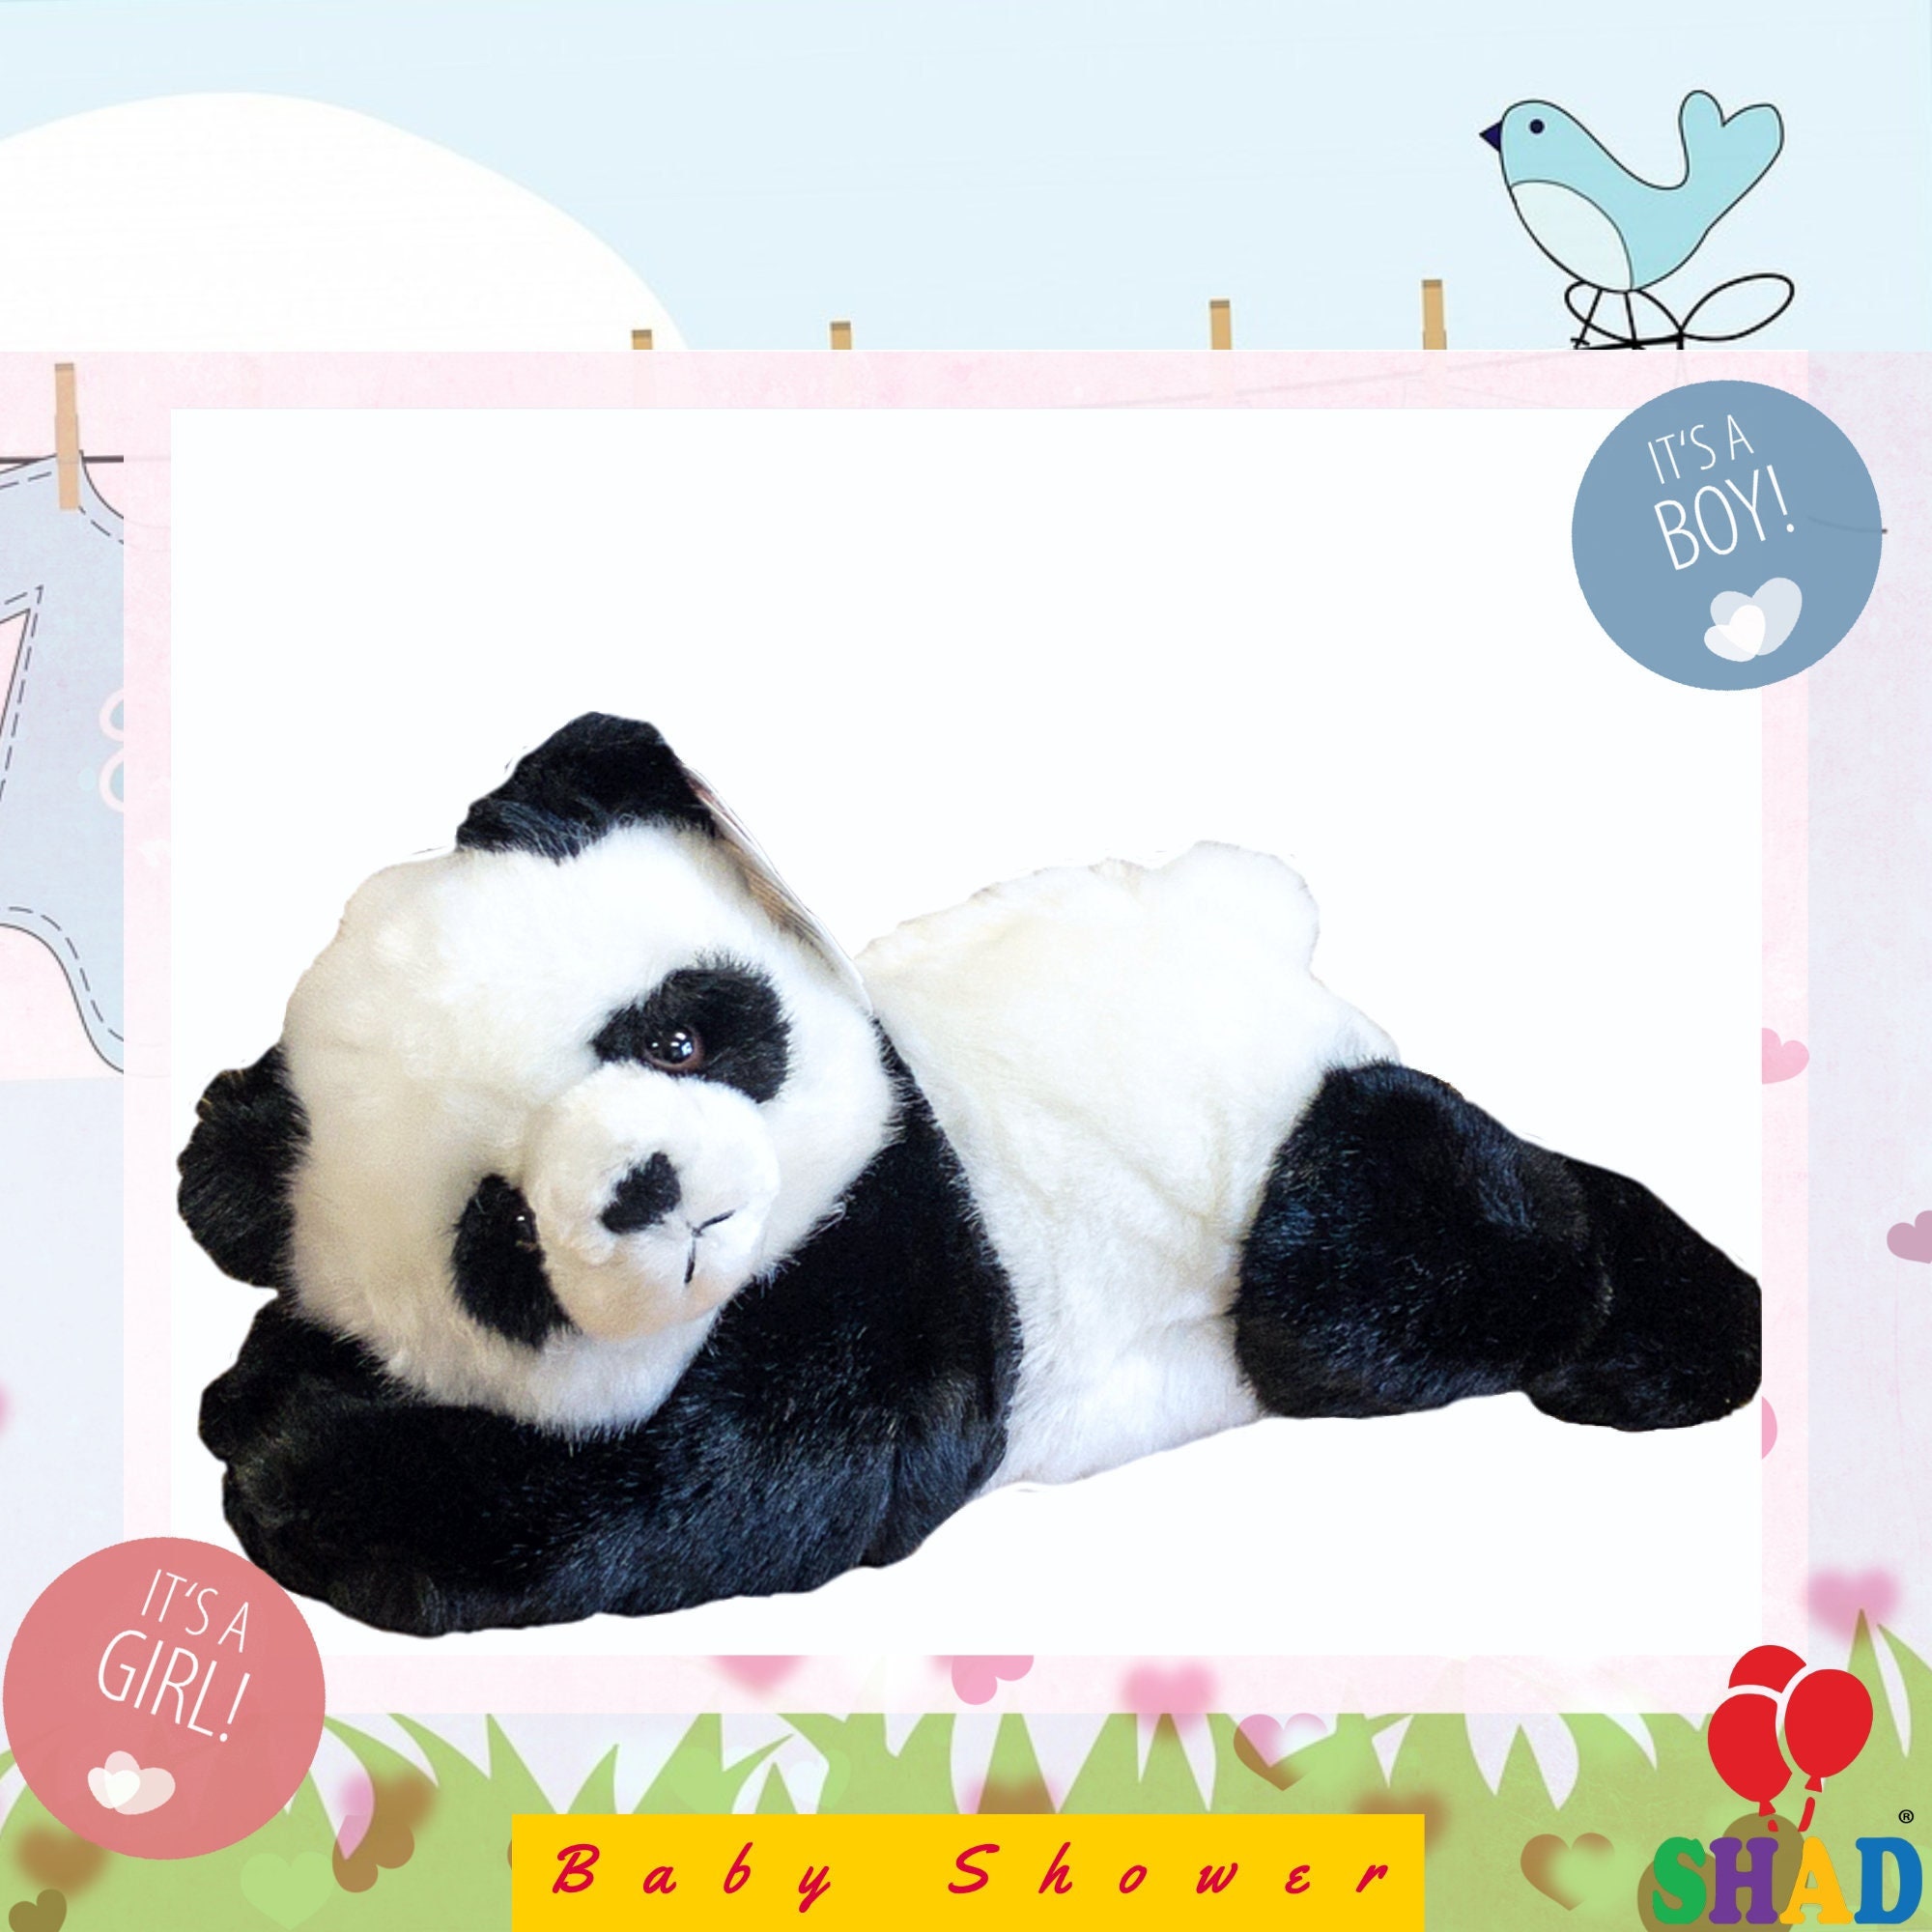 Babyparty Geschenk/Panda Bär Stofftier/süßes weiches Plüschtier für  Baby/Plüsch Panda Geschenk für Kind/Babyparty gefülltes Plüschtier/ohne  Chemikalien - .de